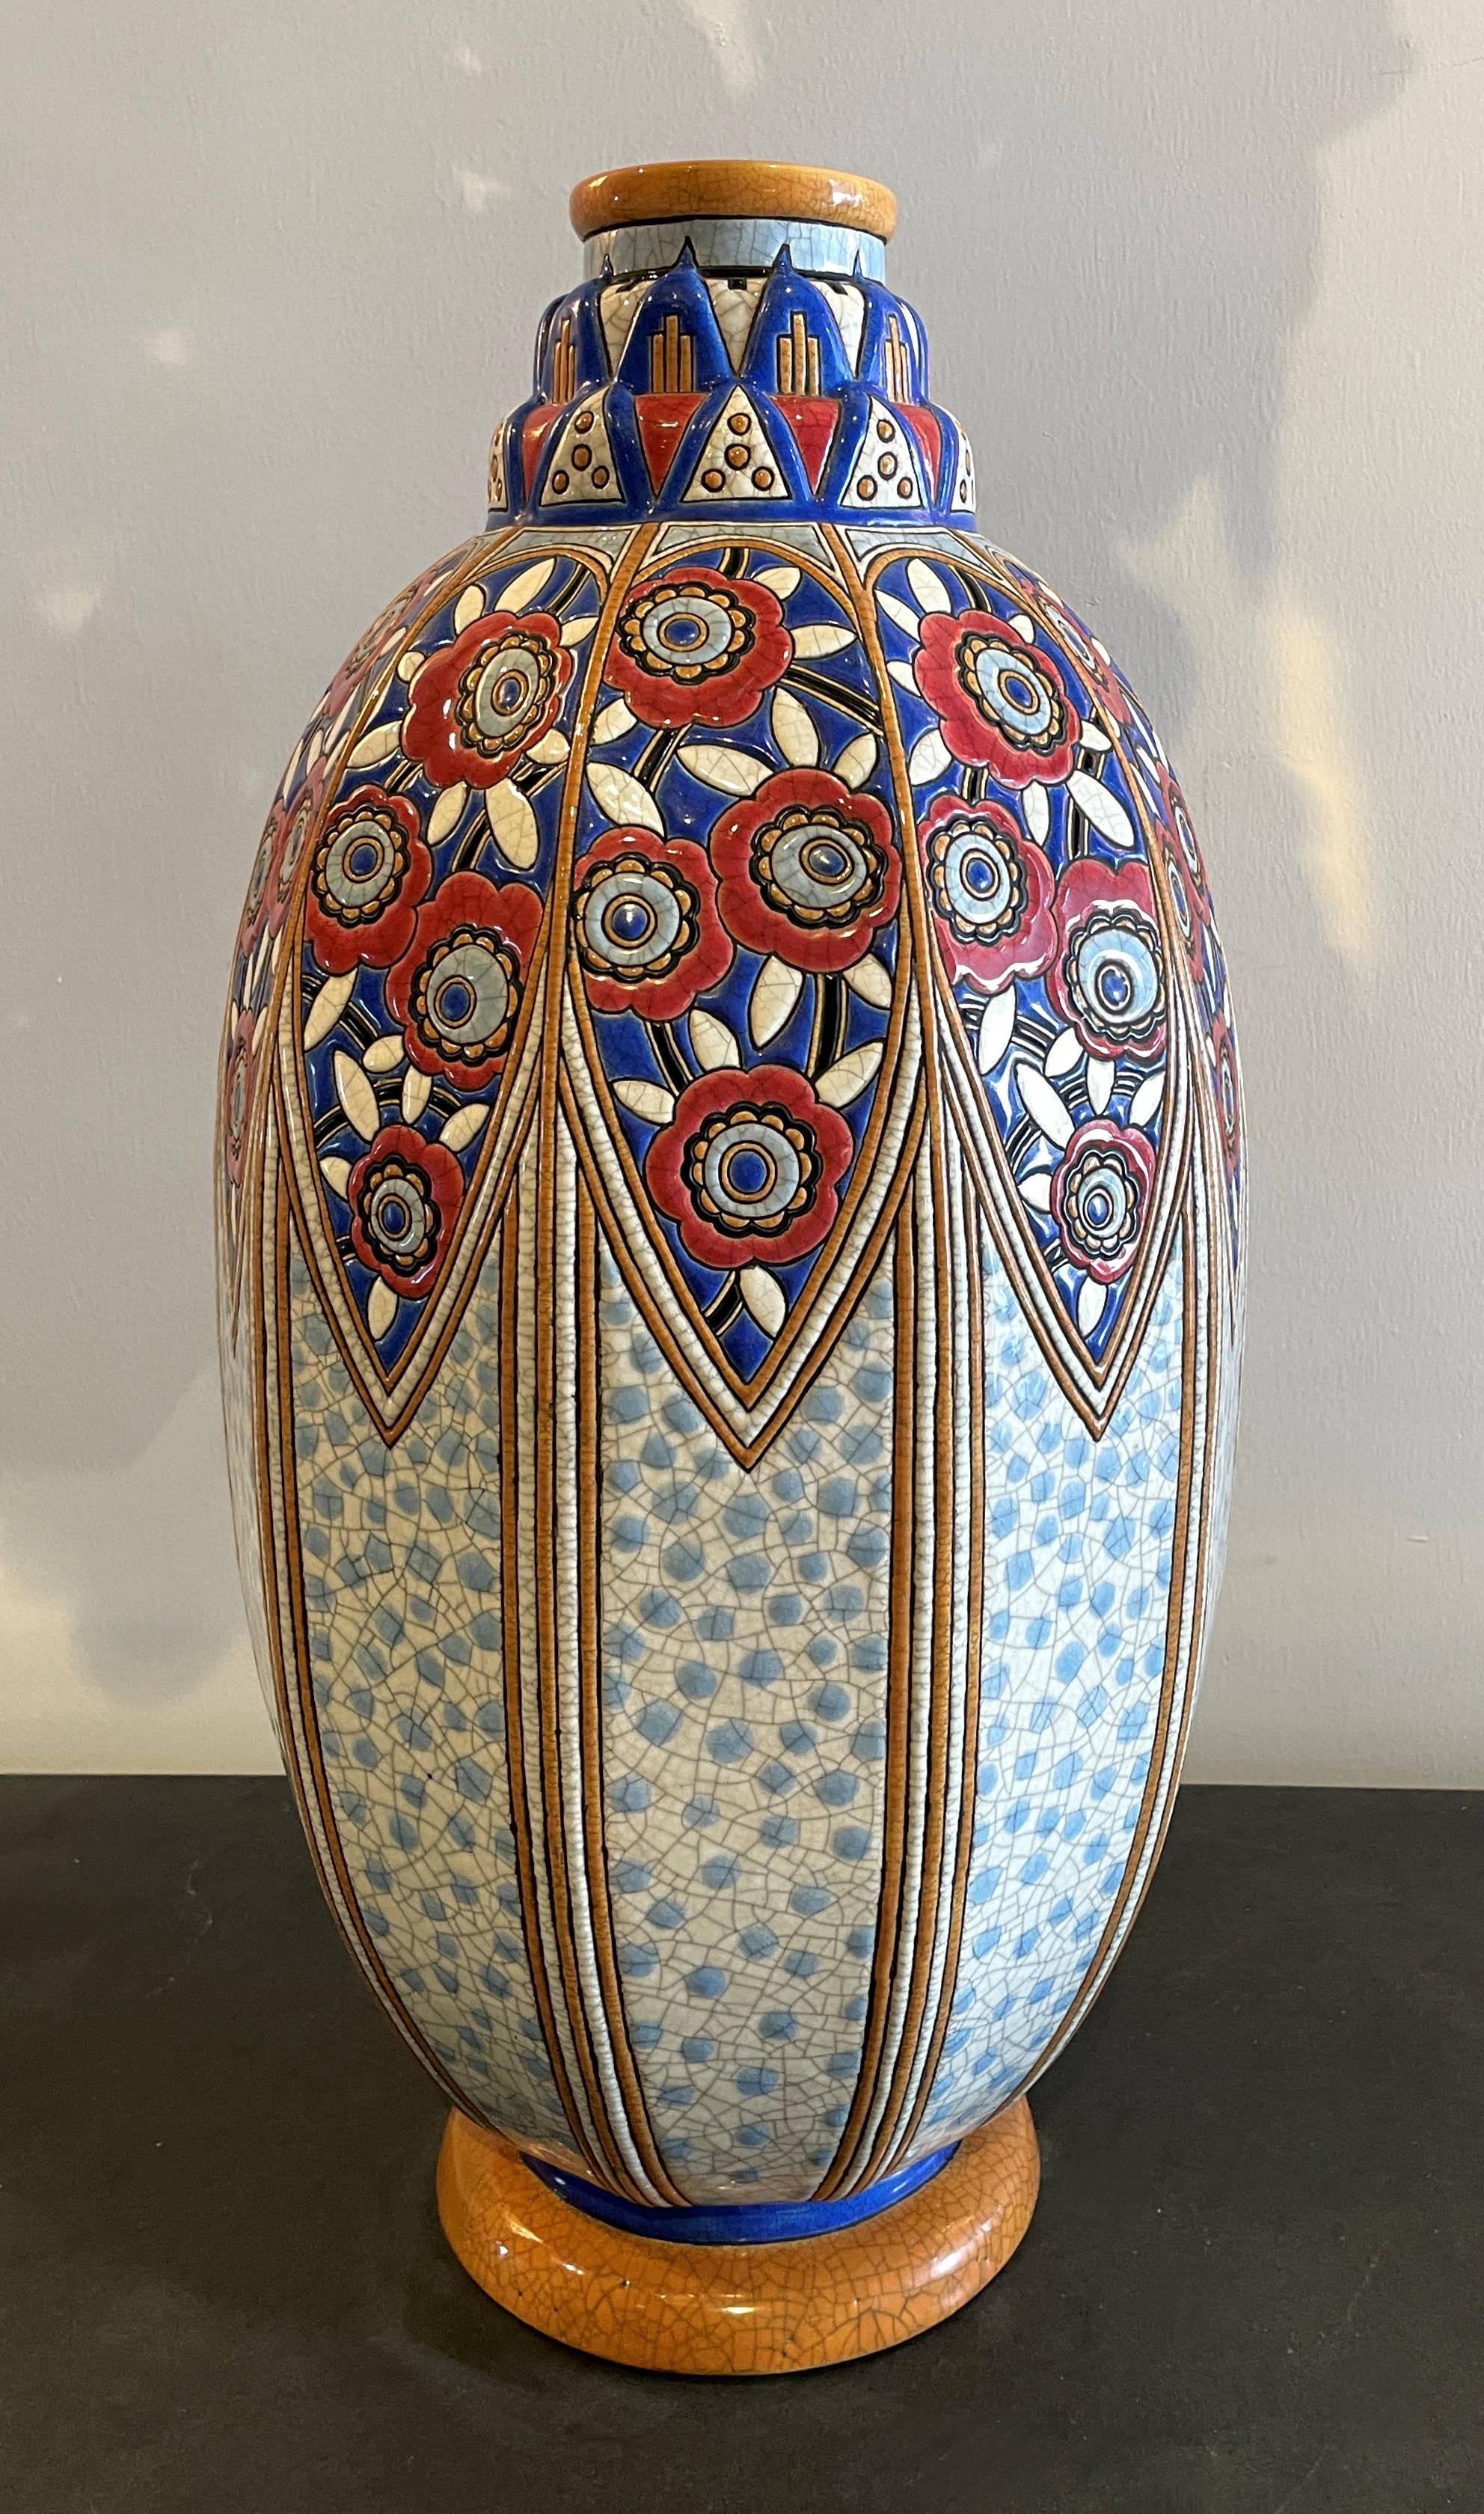 Eine seltene und schöne französische Art Deco Longwy emaillierte Ausstellungsvase von Maurice Paul Chevalier, Einzelstück, datiert 15. Juni 1928 

Die Vase ist in sehr gutem Zustand, ohne Chips oder Risse.